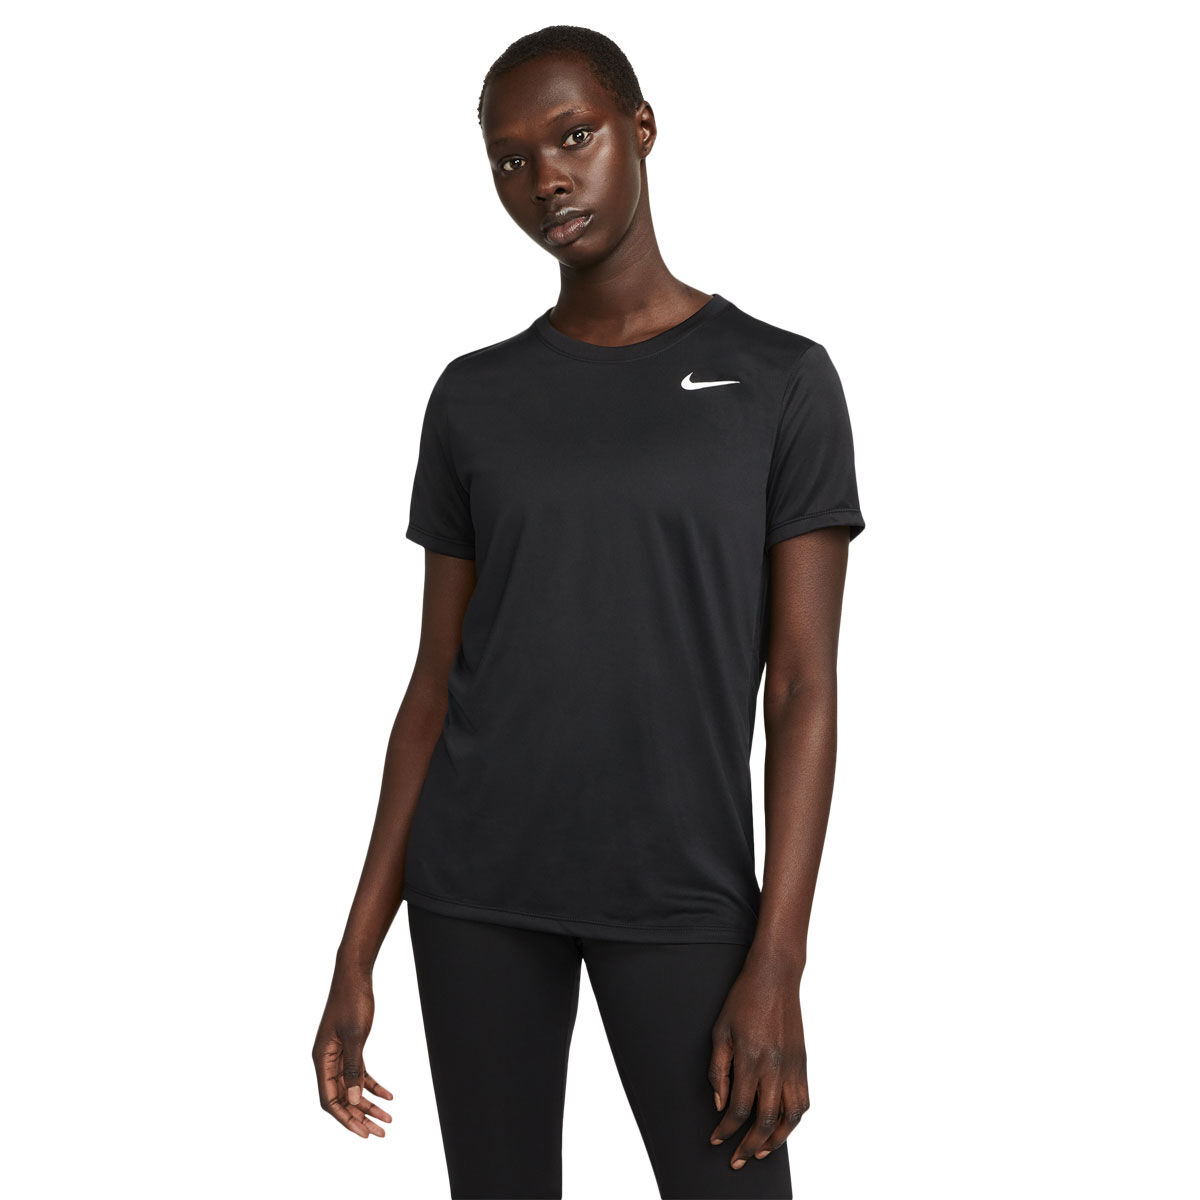 Nike Womens Dri-FIT Tee | Rebel Sport